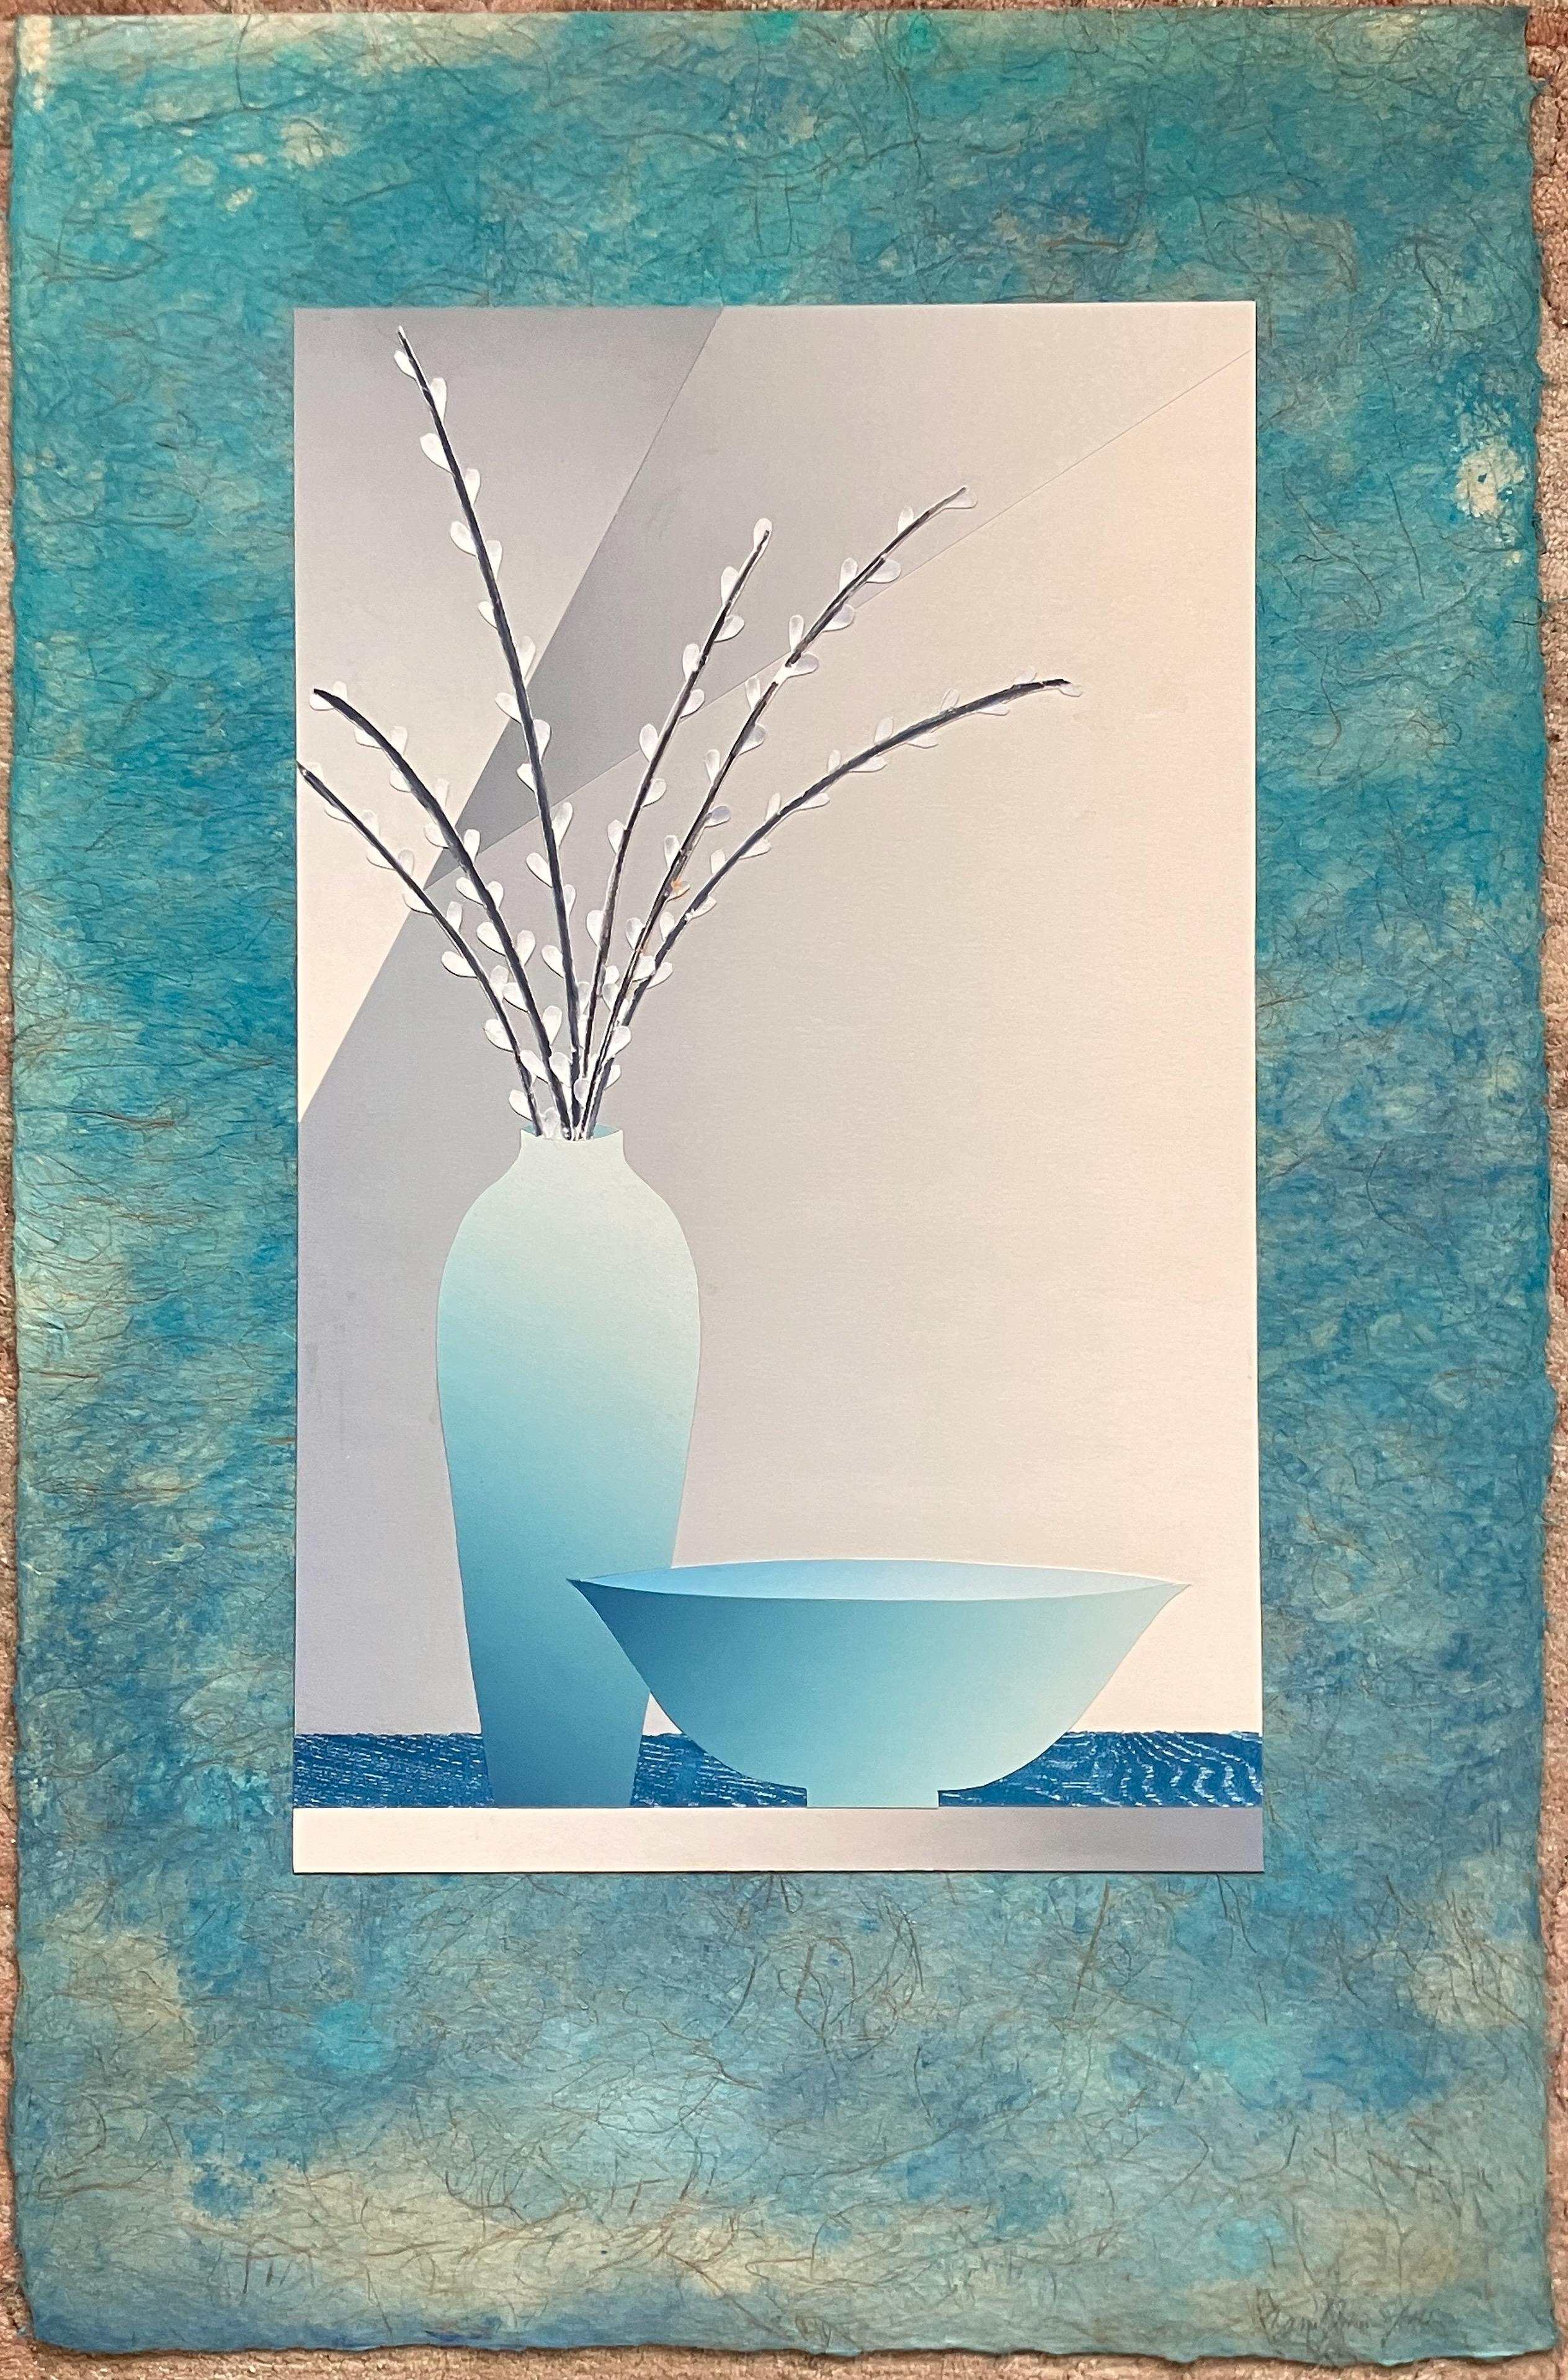 Willows in Vase - Still Life - Mixed Media Art by Daniel Joshua Goldstein